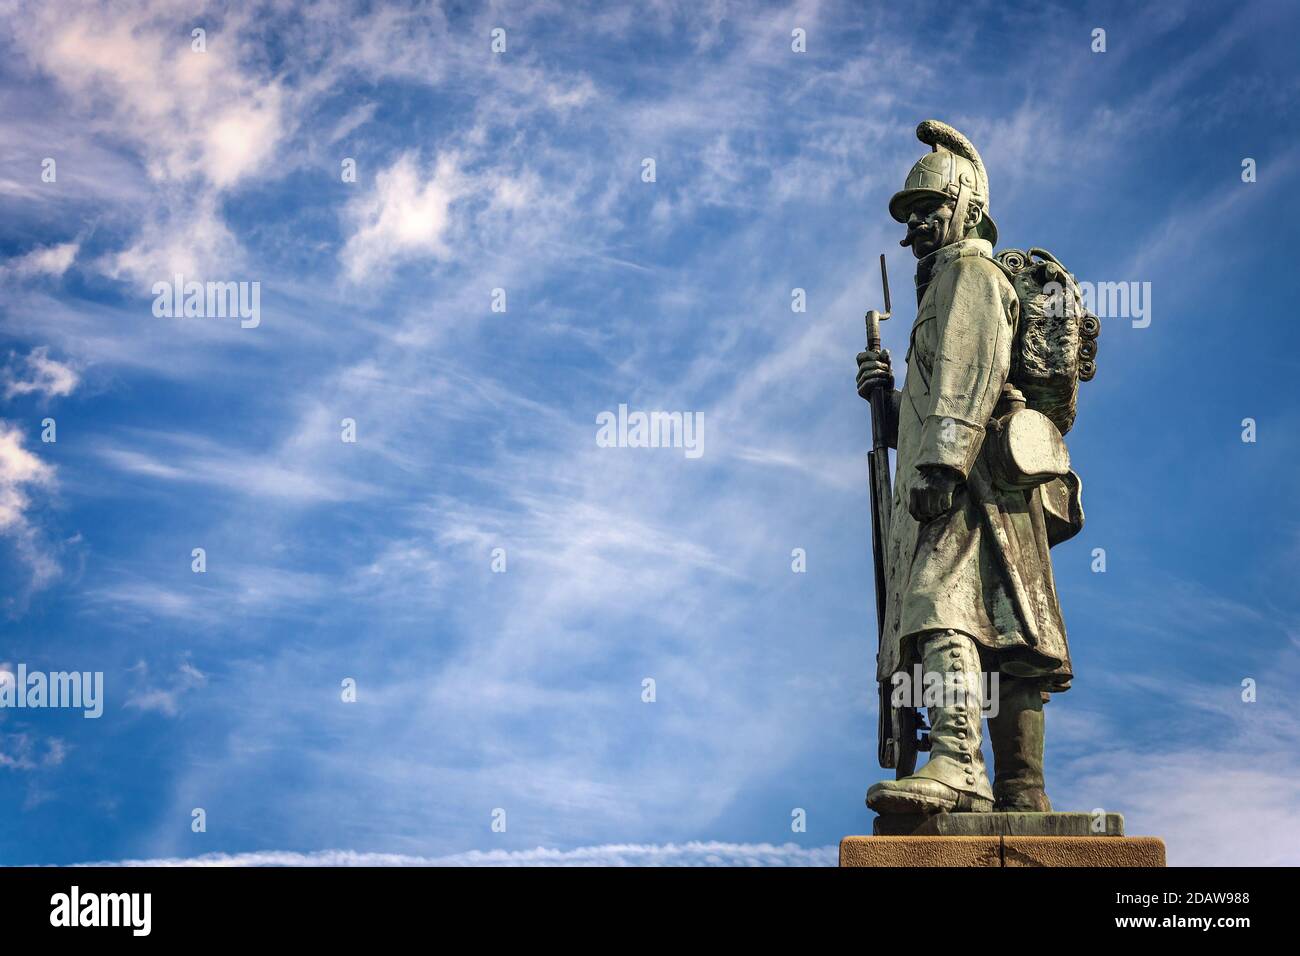 Monumento asburgico delle guerre napoleoniche con un soldato austriaco (1809) a Tarvisio, Friuli-Venezia Giulia, Italia, Europa. Foto Stock